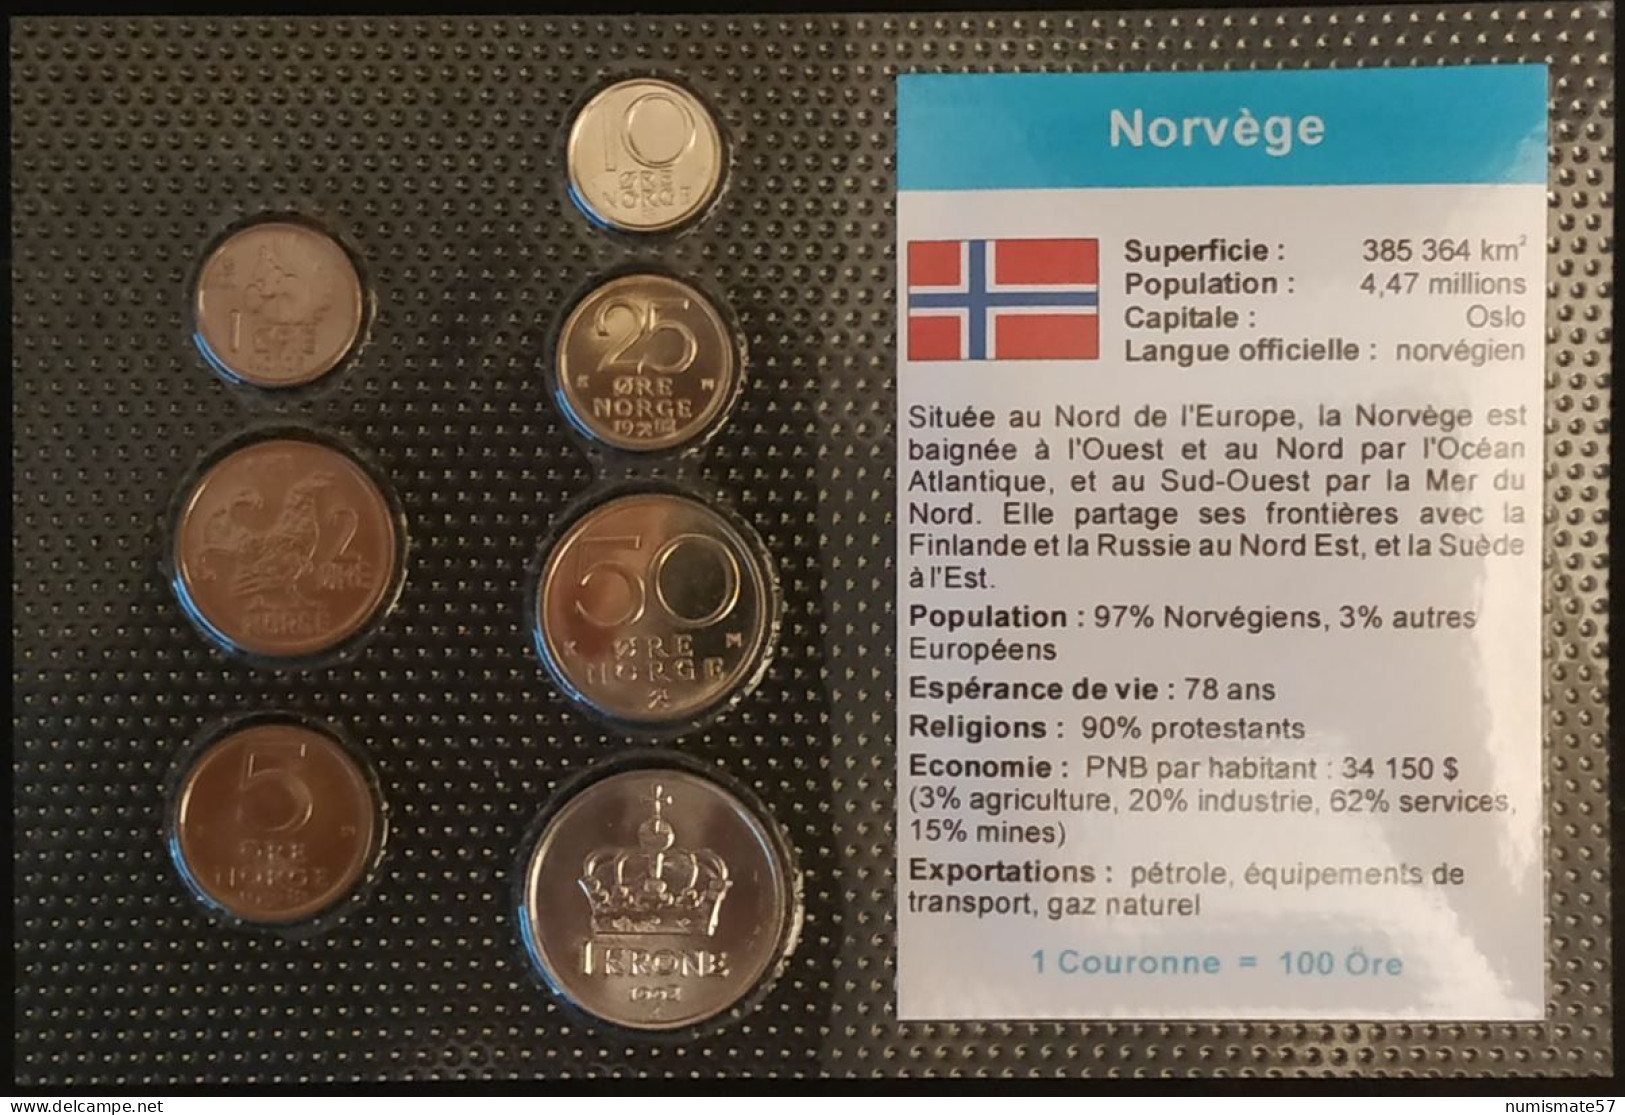 NORVEGE - NORWAY - SERIE DE 7 PIECES DIFFERENTES - 1 - 2 - 5 - 10 - 25 - 50 - ORE - 1 KRONE - Noruega